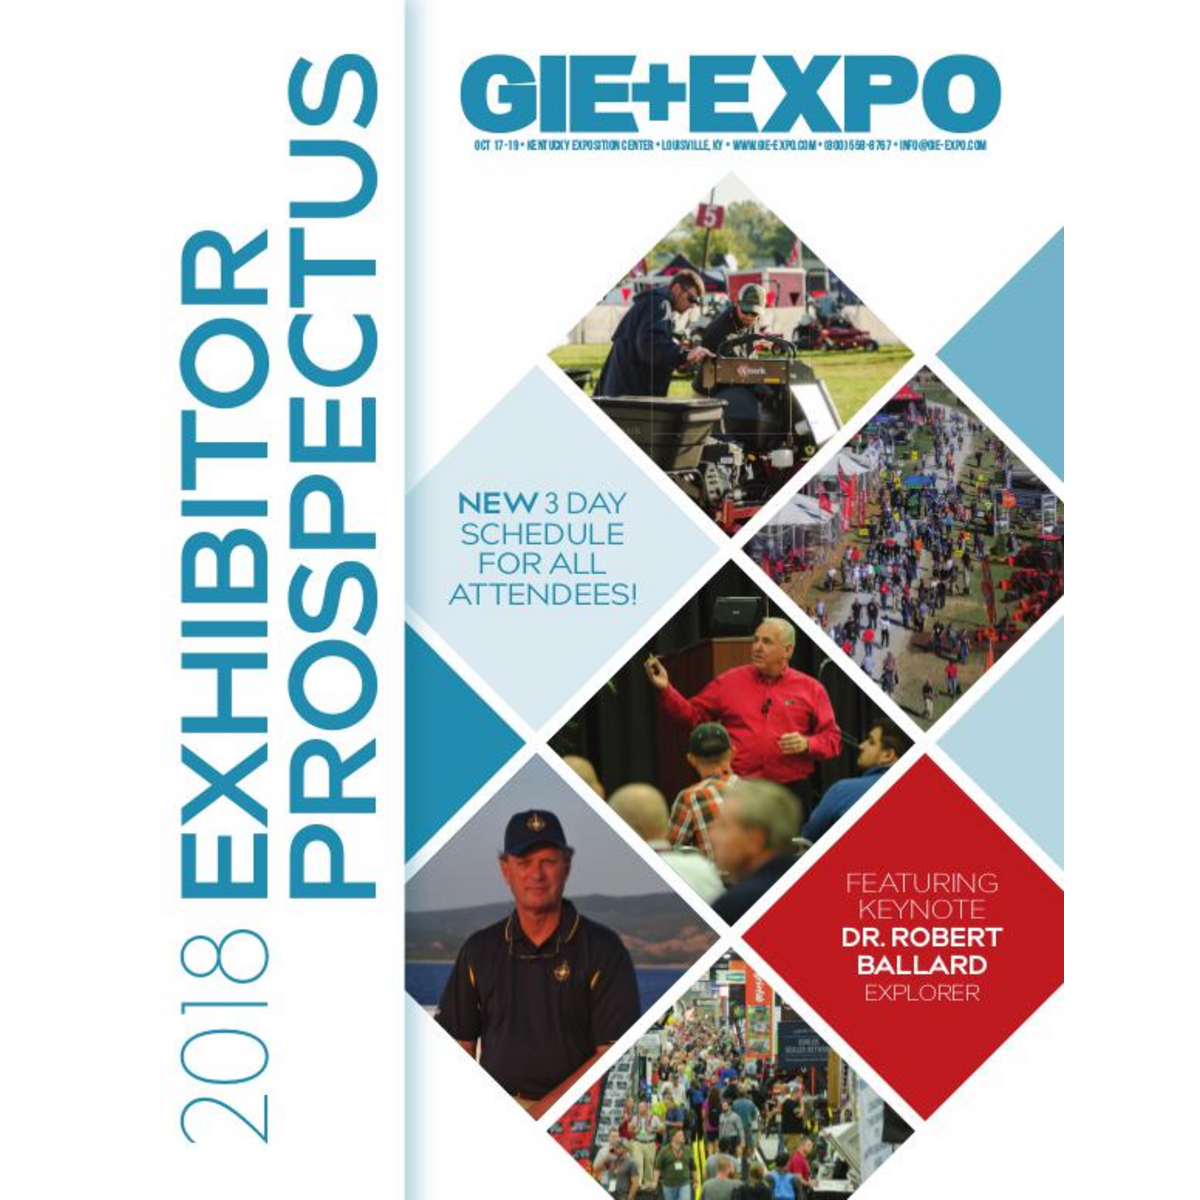 GIE+EXPO Exhibitor Information Prospectus 2018